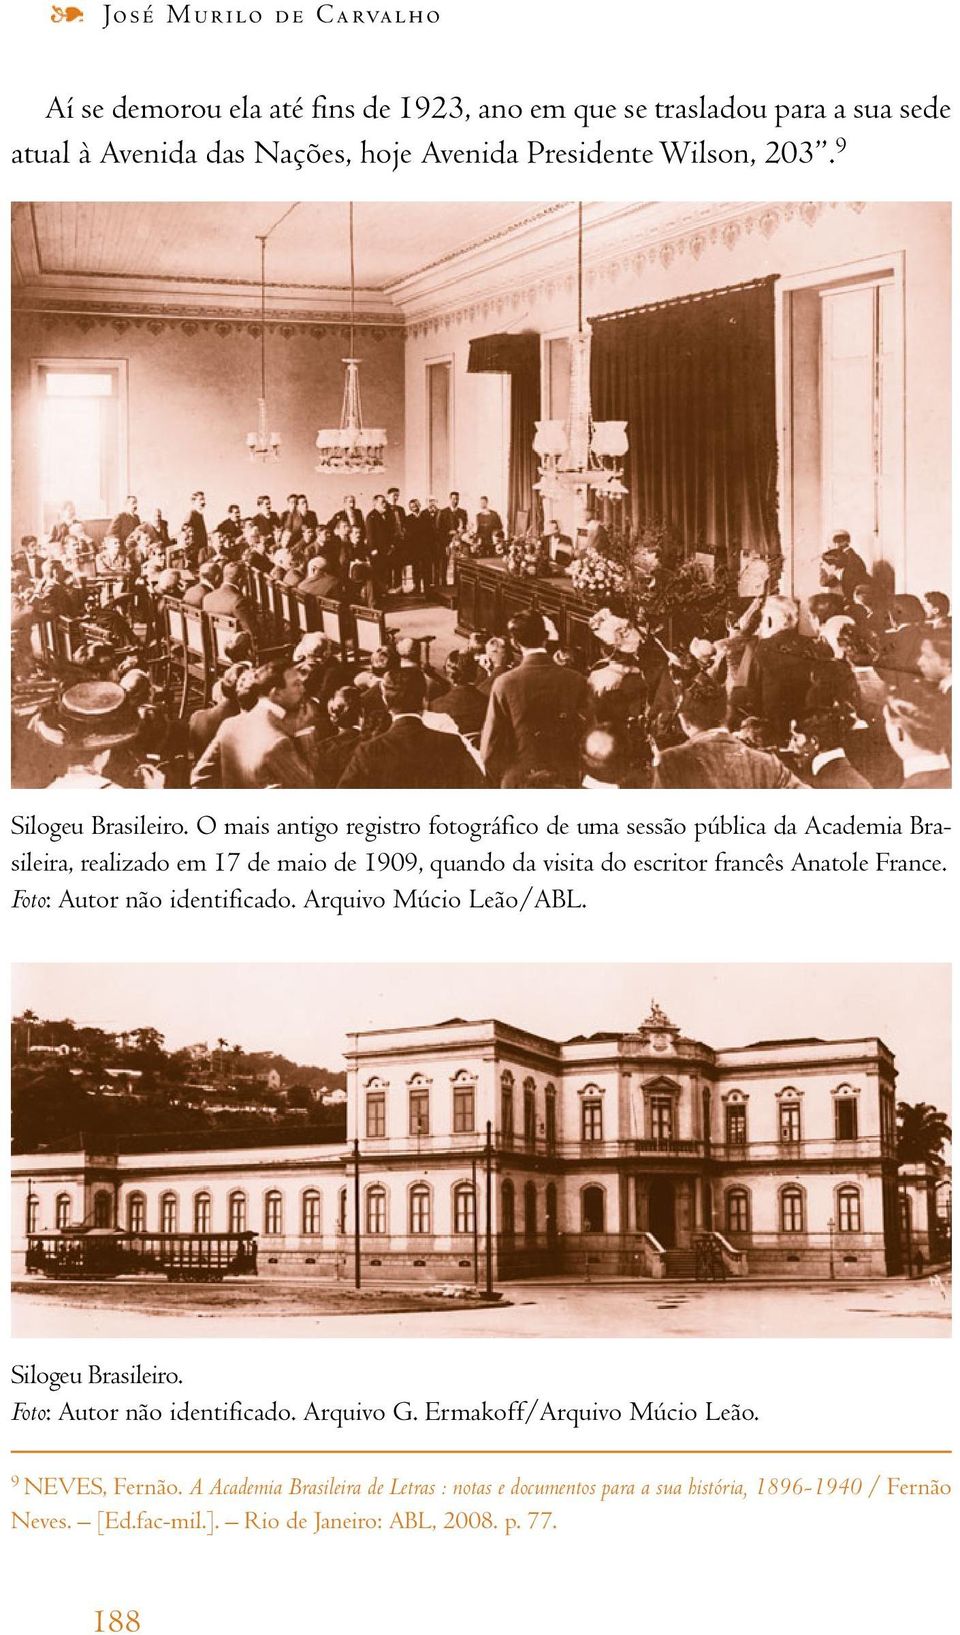 O mais antigo registro fotográfico de uma sessão pública da Academia Brasileira, realizado em 17 de maio de 1909, quando da visita do escritor francês Anatole France.